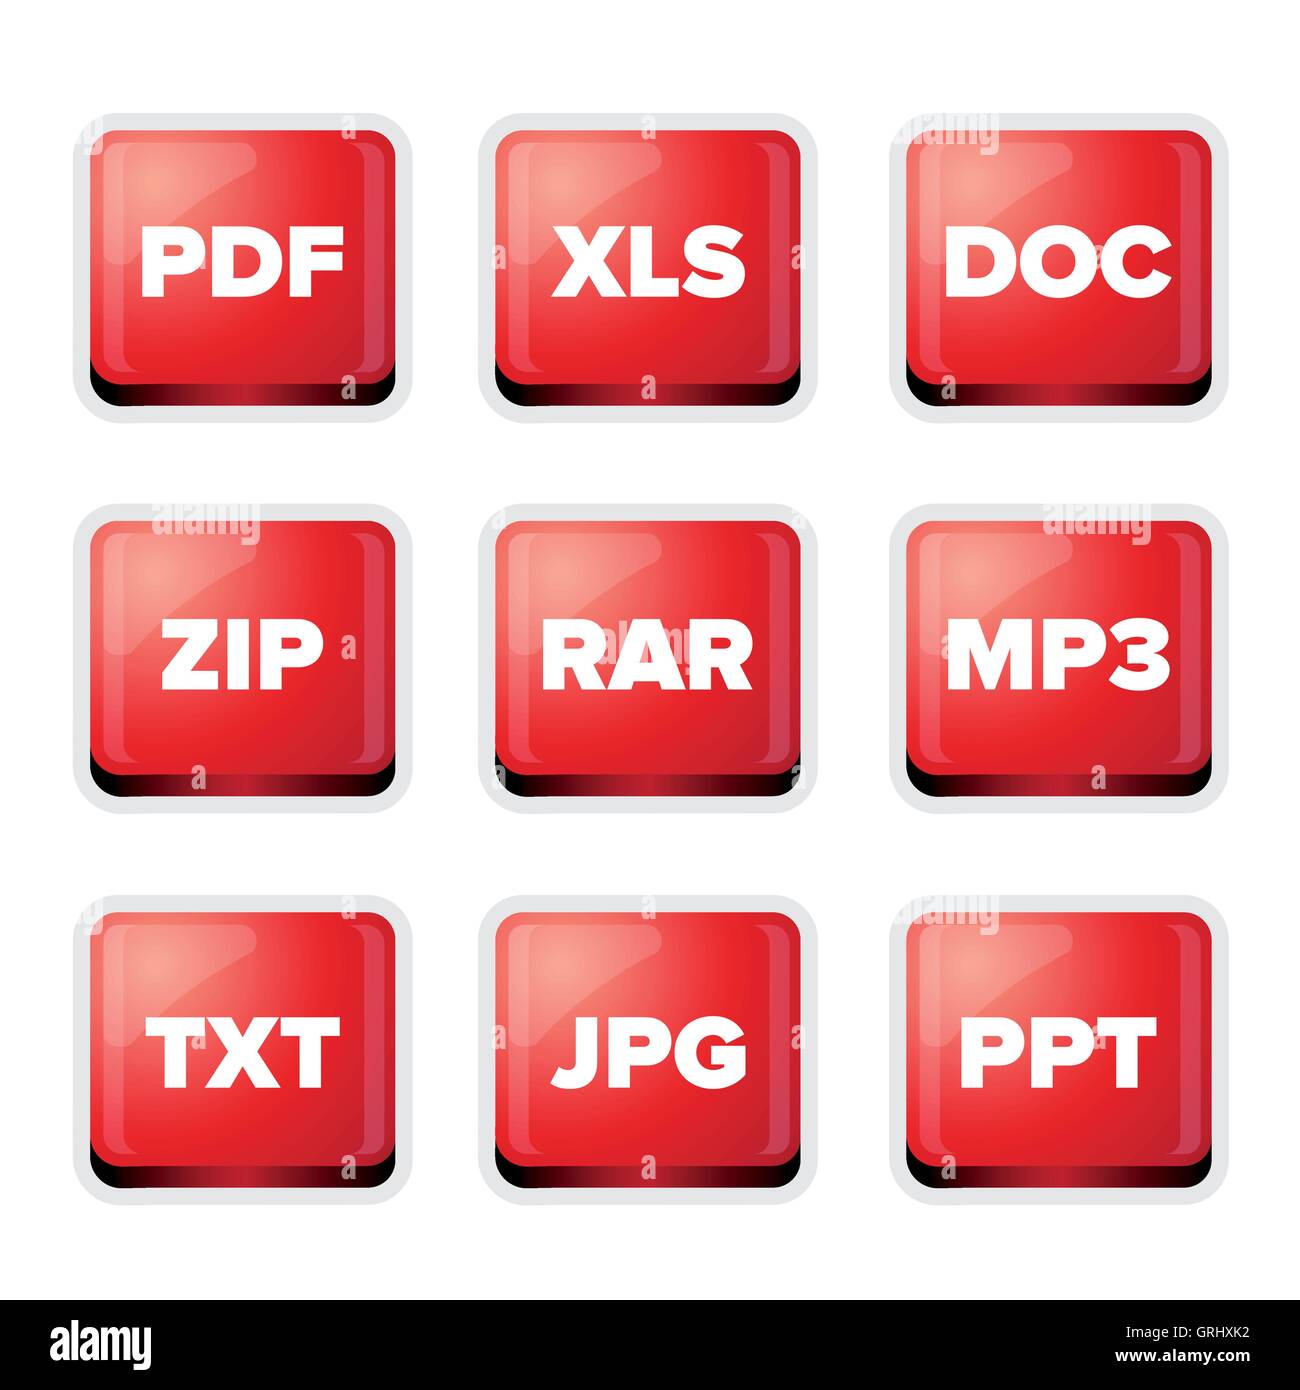 Les extensions de fichier icons set : pdf, xls, doc, zip, rar, mp3, txt, jp  Image Vectorielle Stock - Alamy